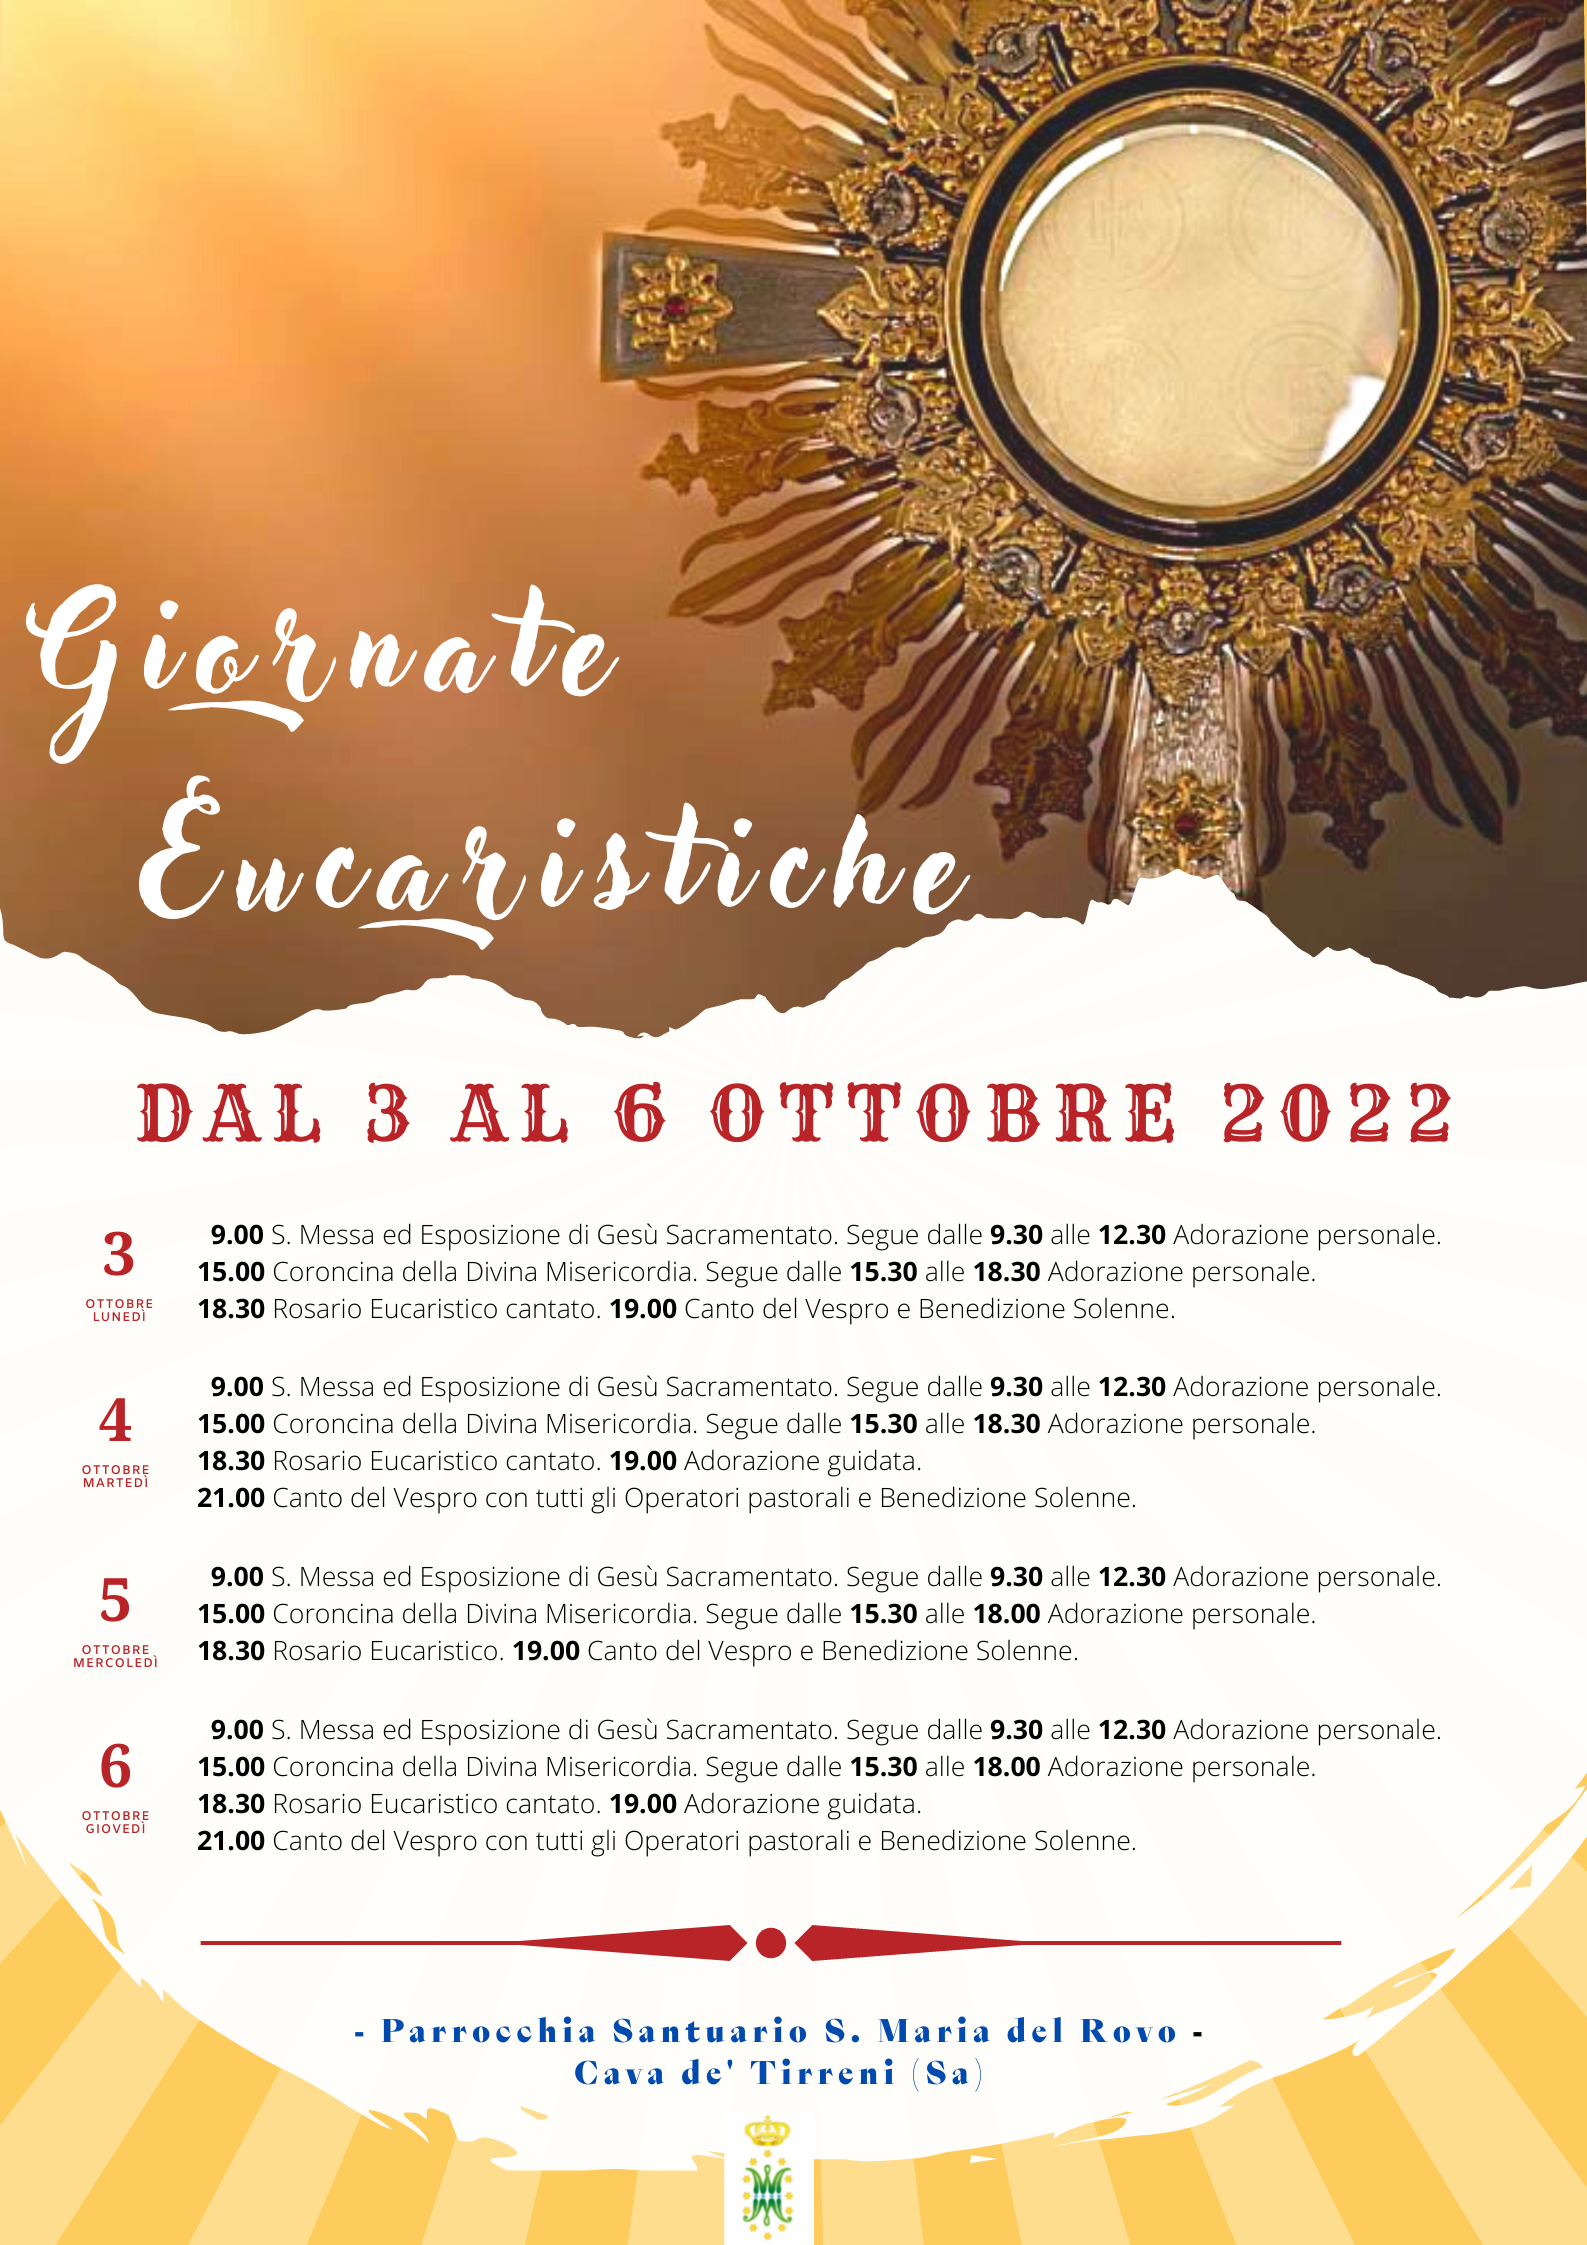 Giornate Eucaristiche 2022